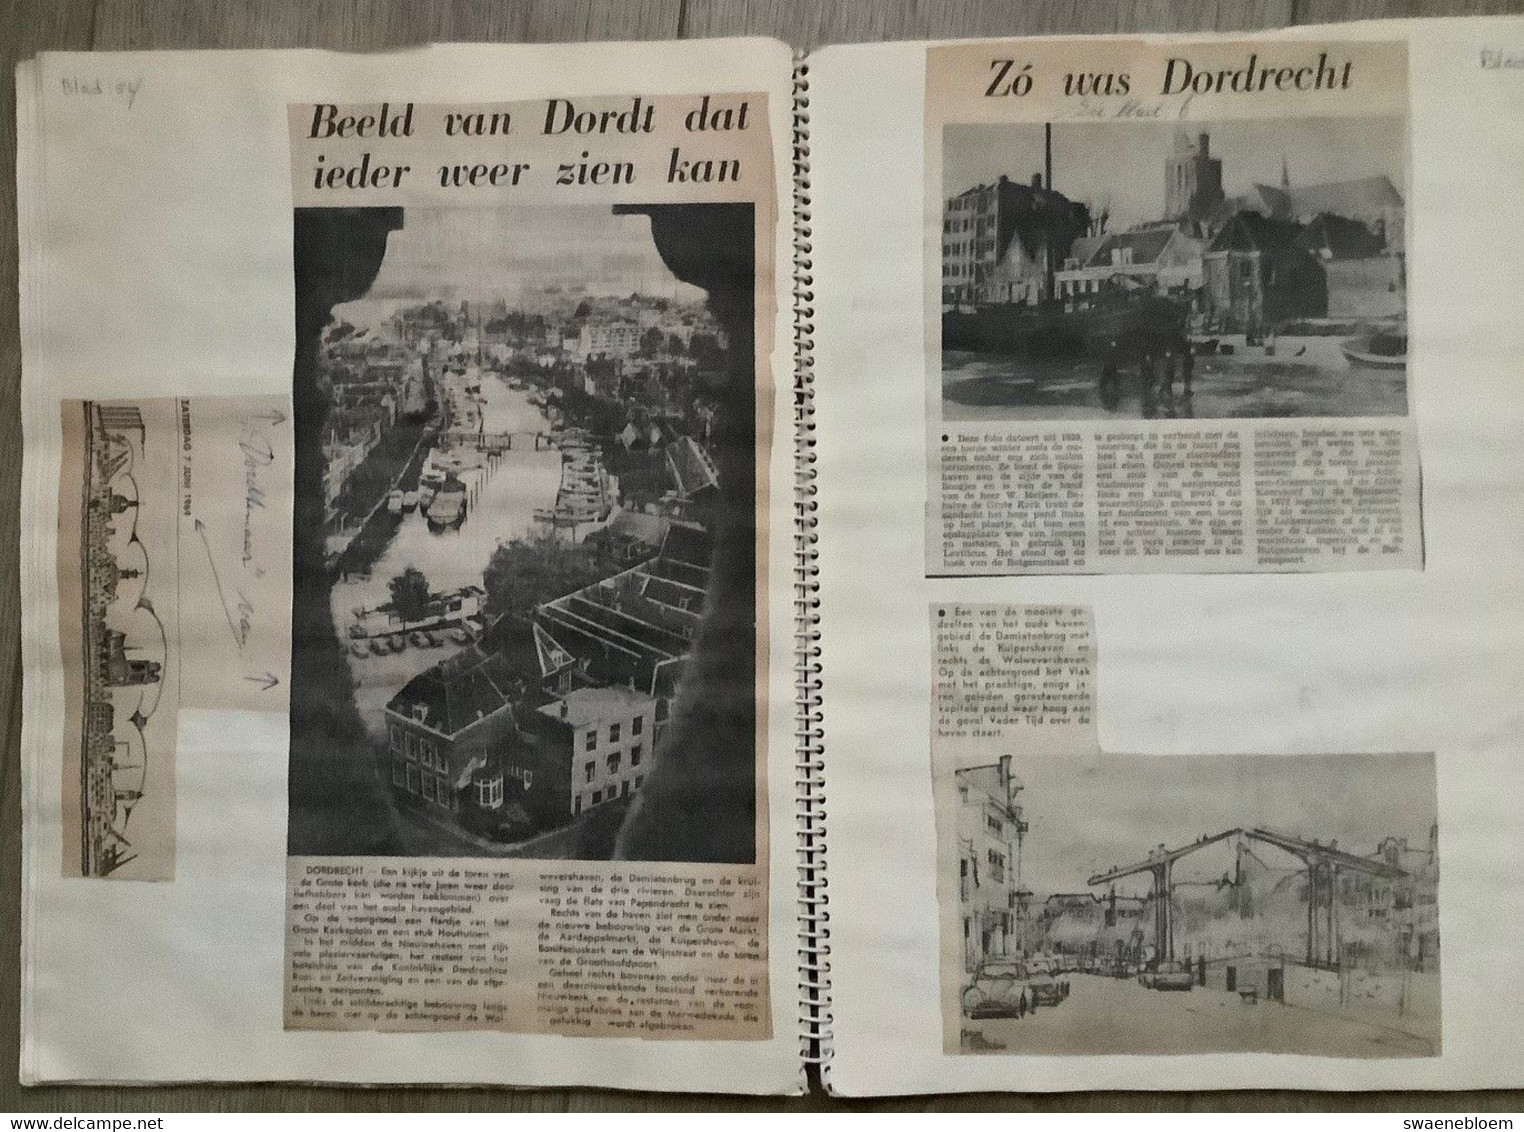 NL.- Drie plakboeken met krantenknipsels van DORDRECHT.